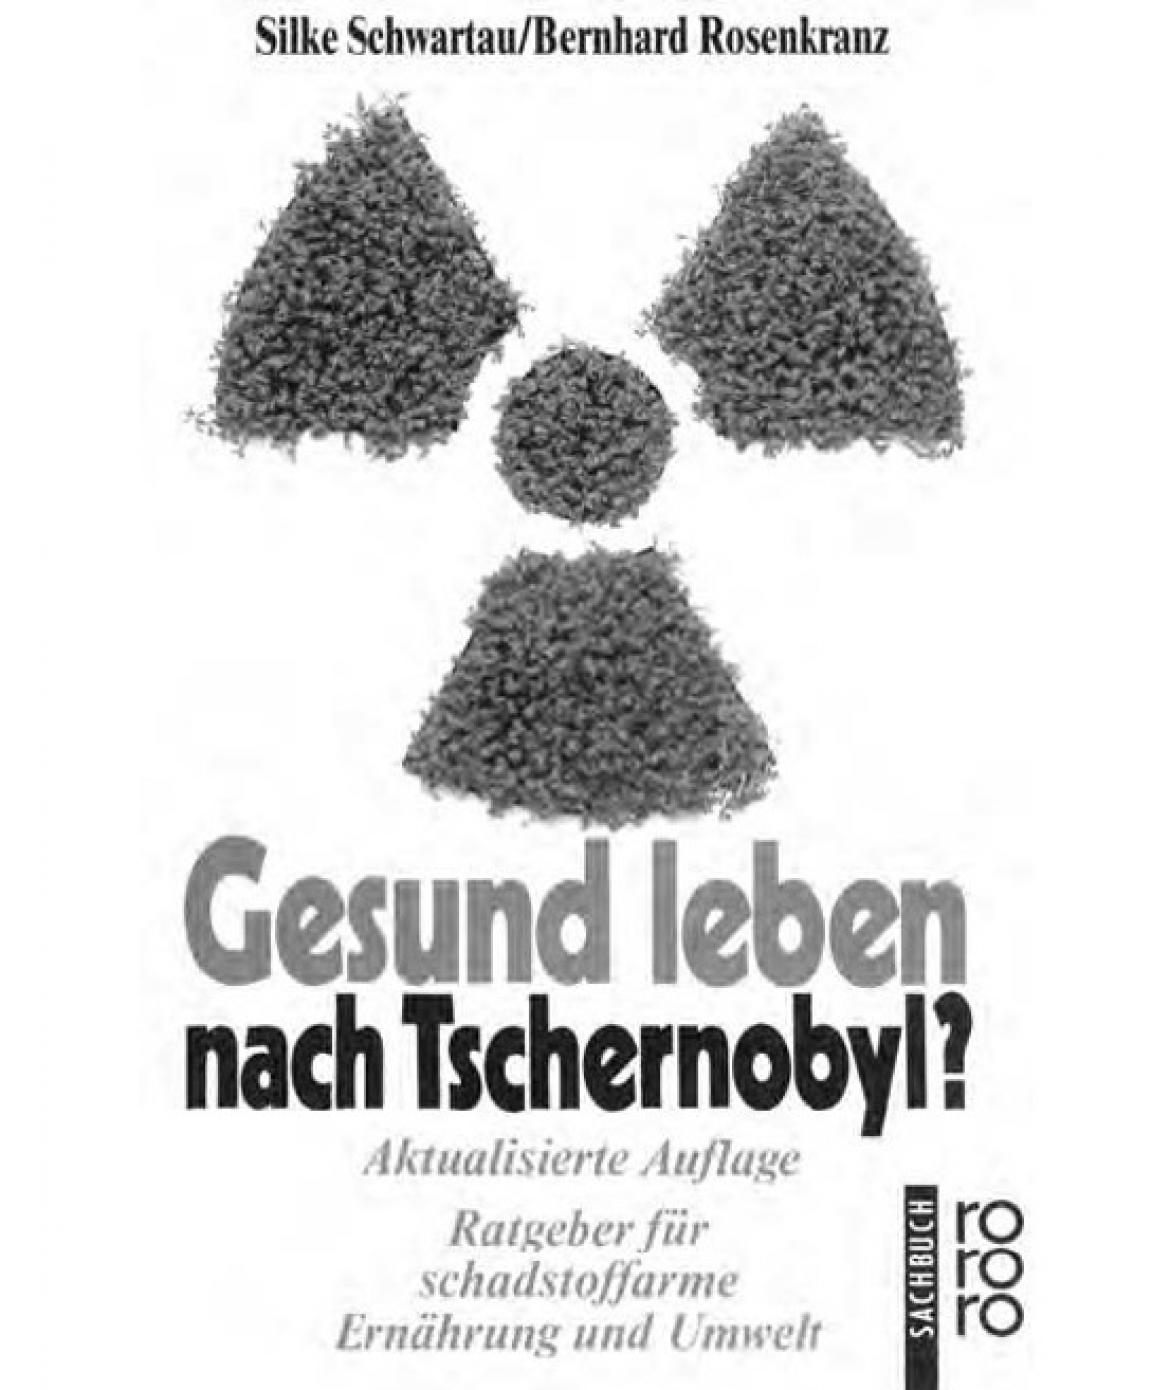 Buchcover "Gesund leben nach Tschernobyl!?" von Silke Schwartau und Bernhard Rosenkranz